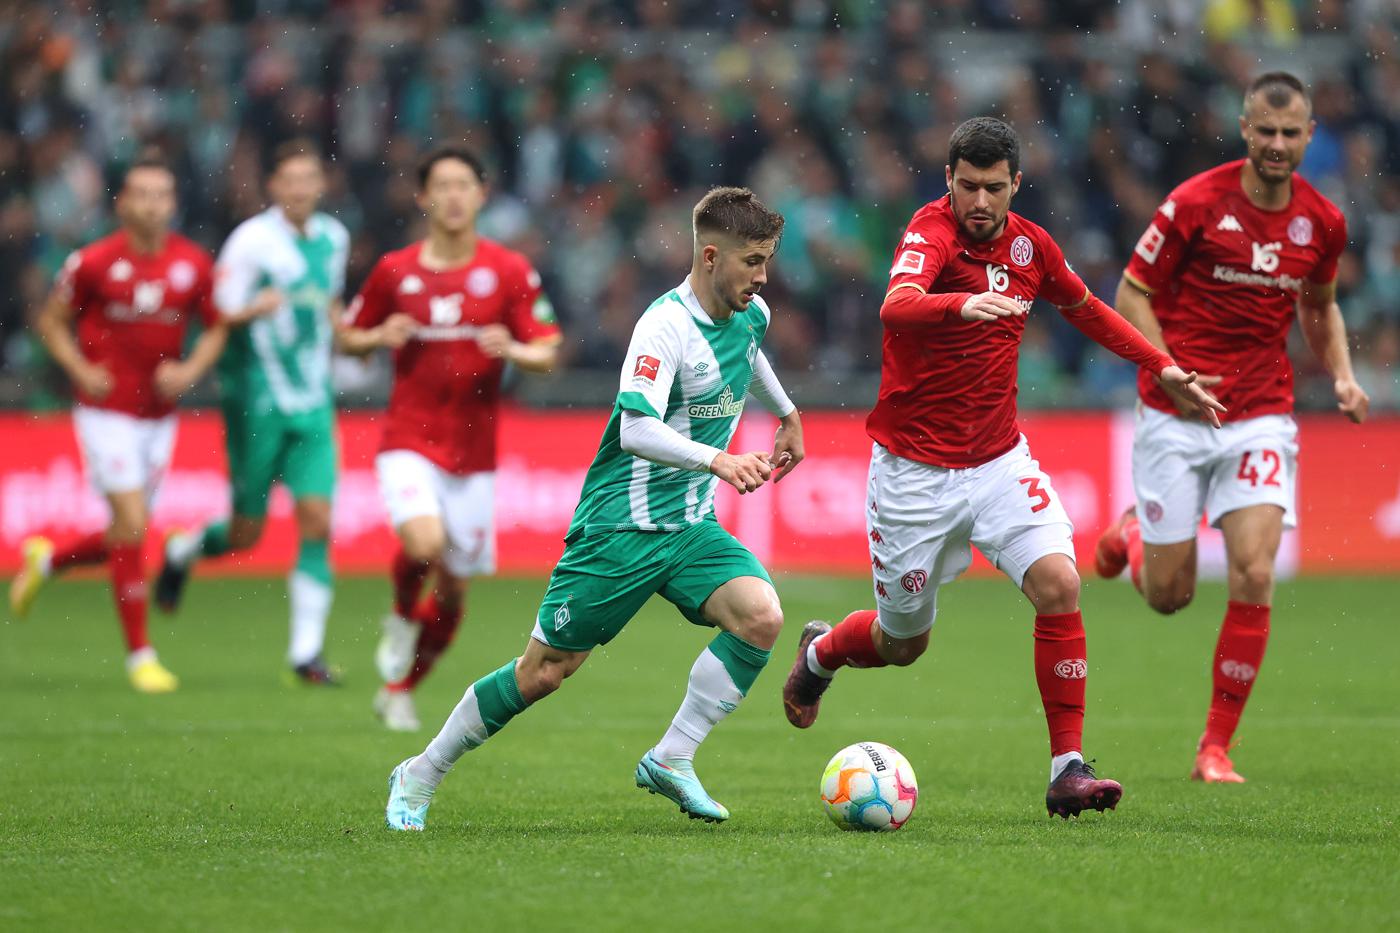 Mainz - Werder - 2:2. German Championship, round 27. Match Review, Statistics